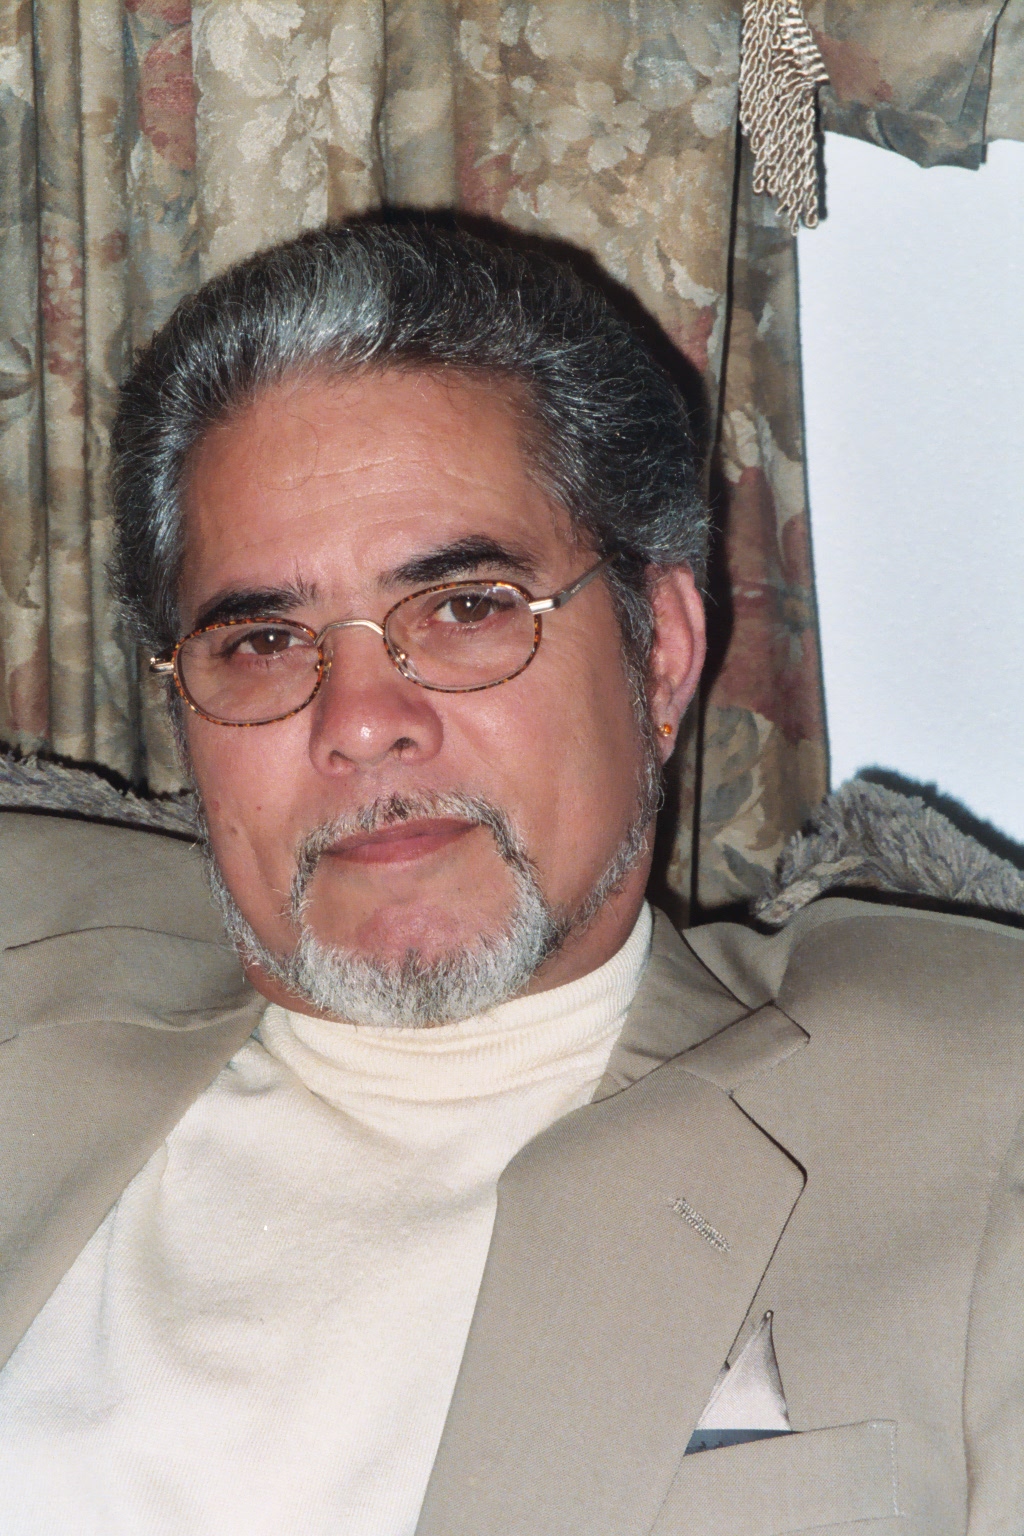 darrell in suit 2003